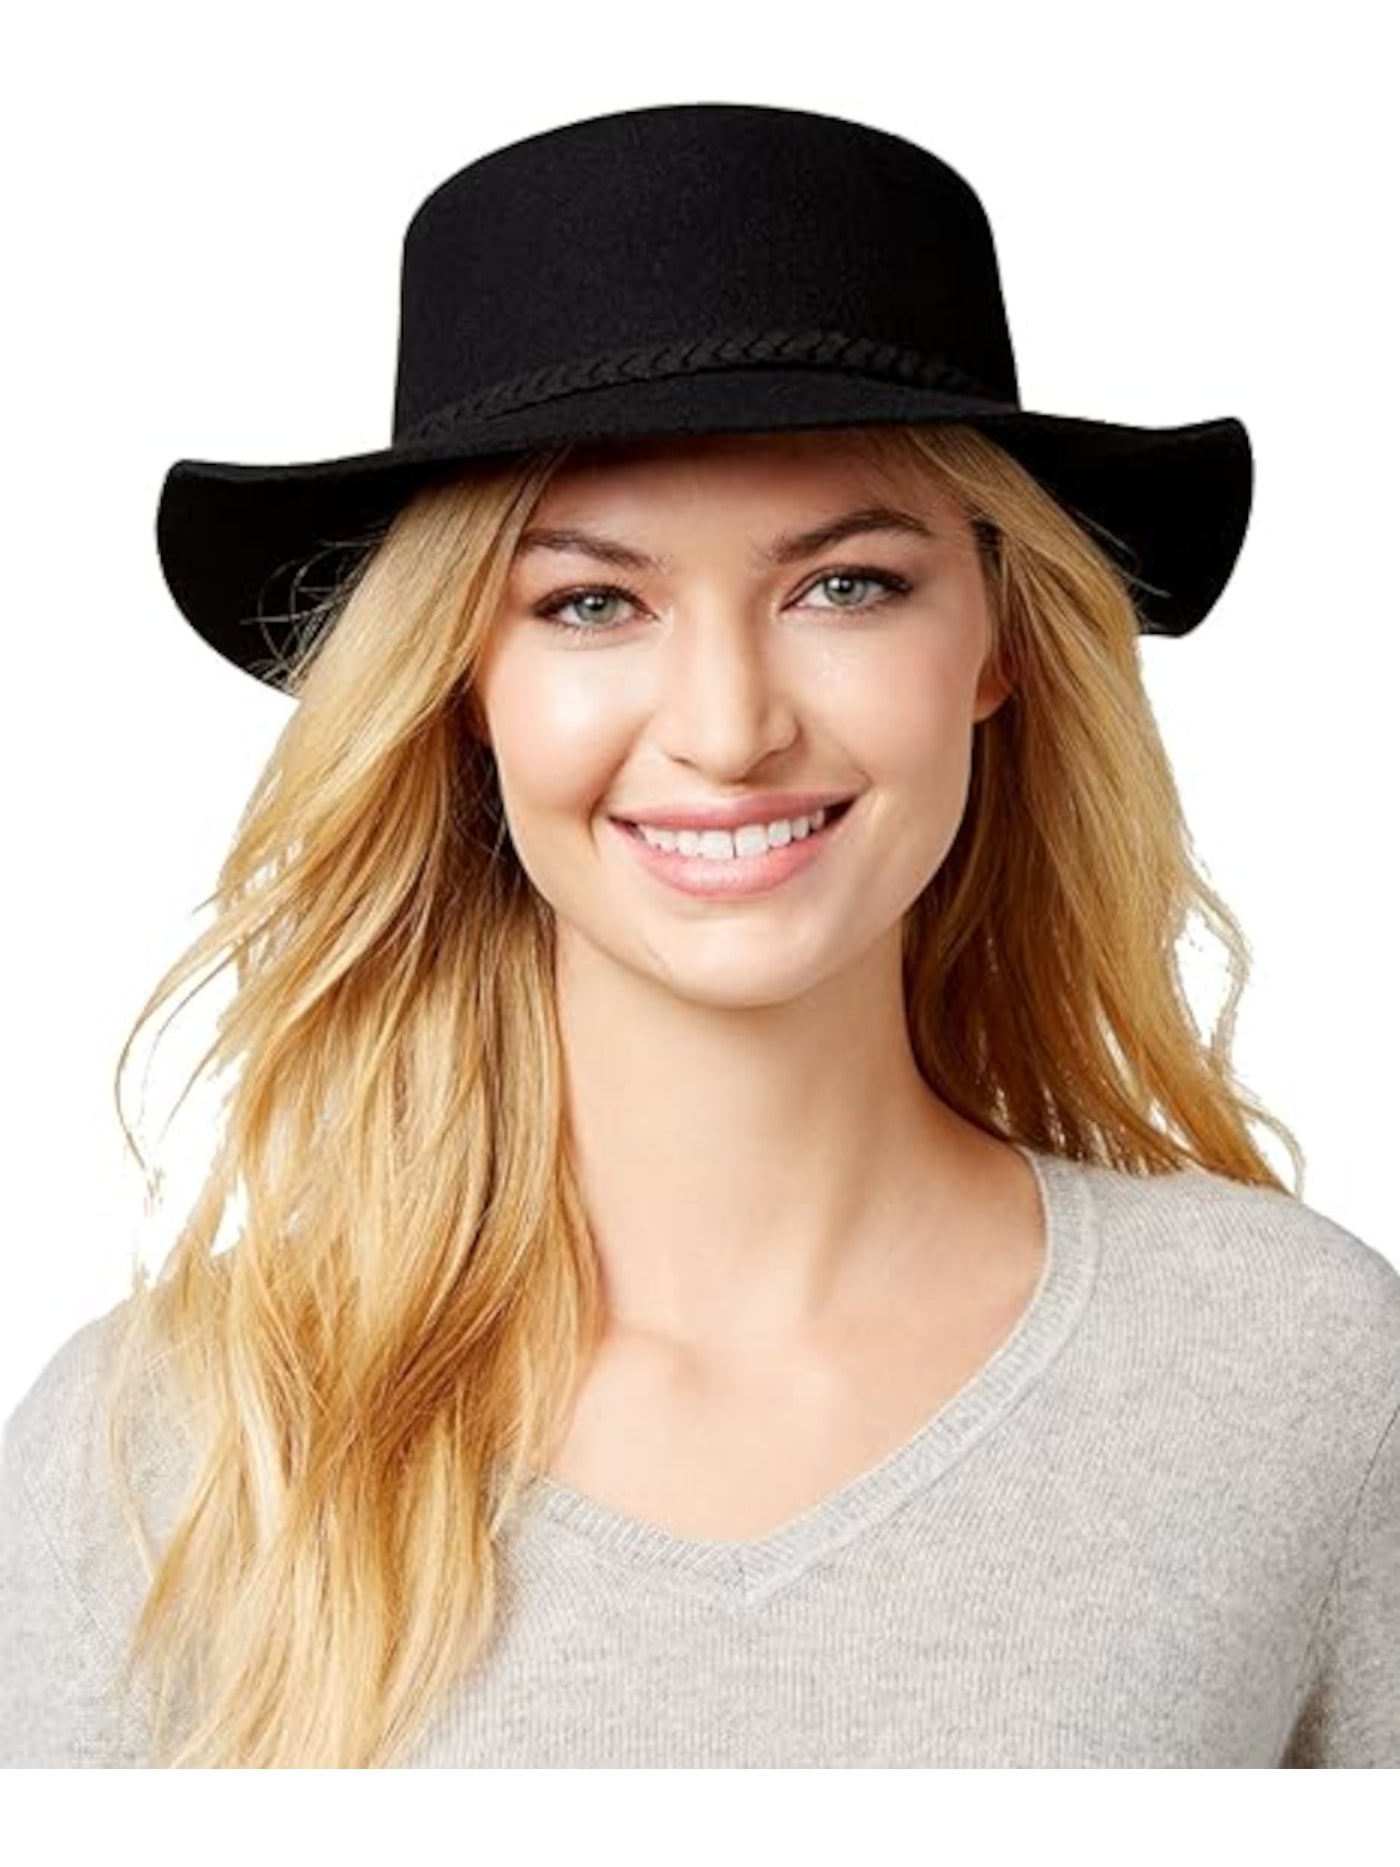 AUGUST HAT CO Womens Black Felt Fitted Tasseled It Girl Floppy Hat